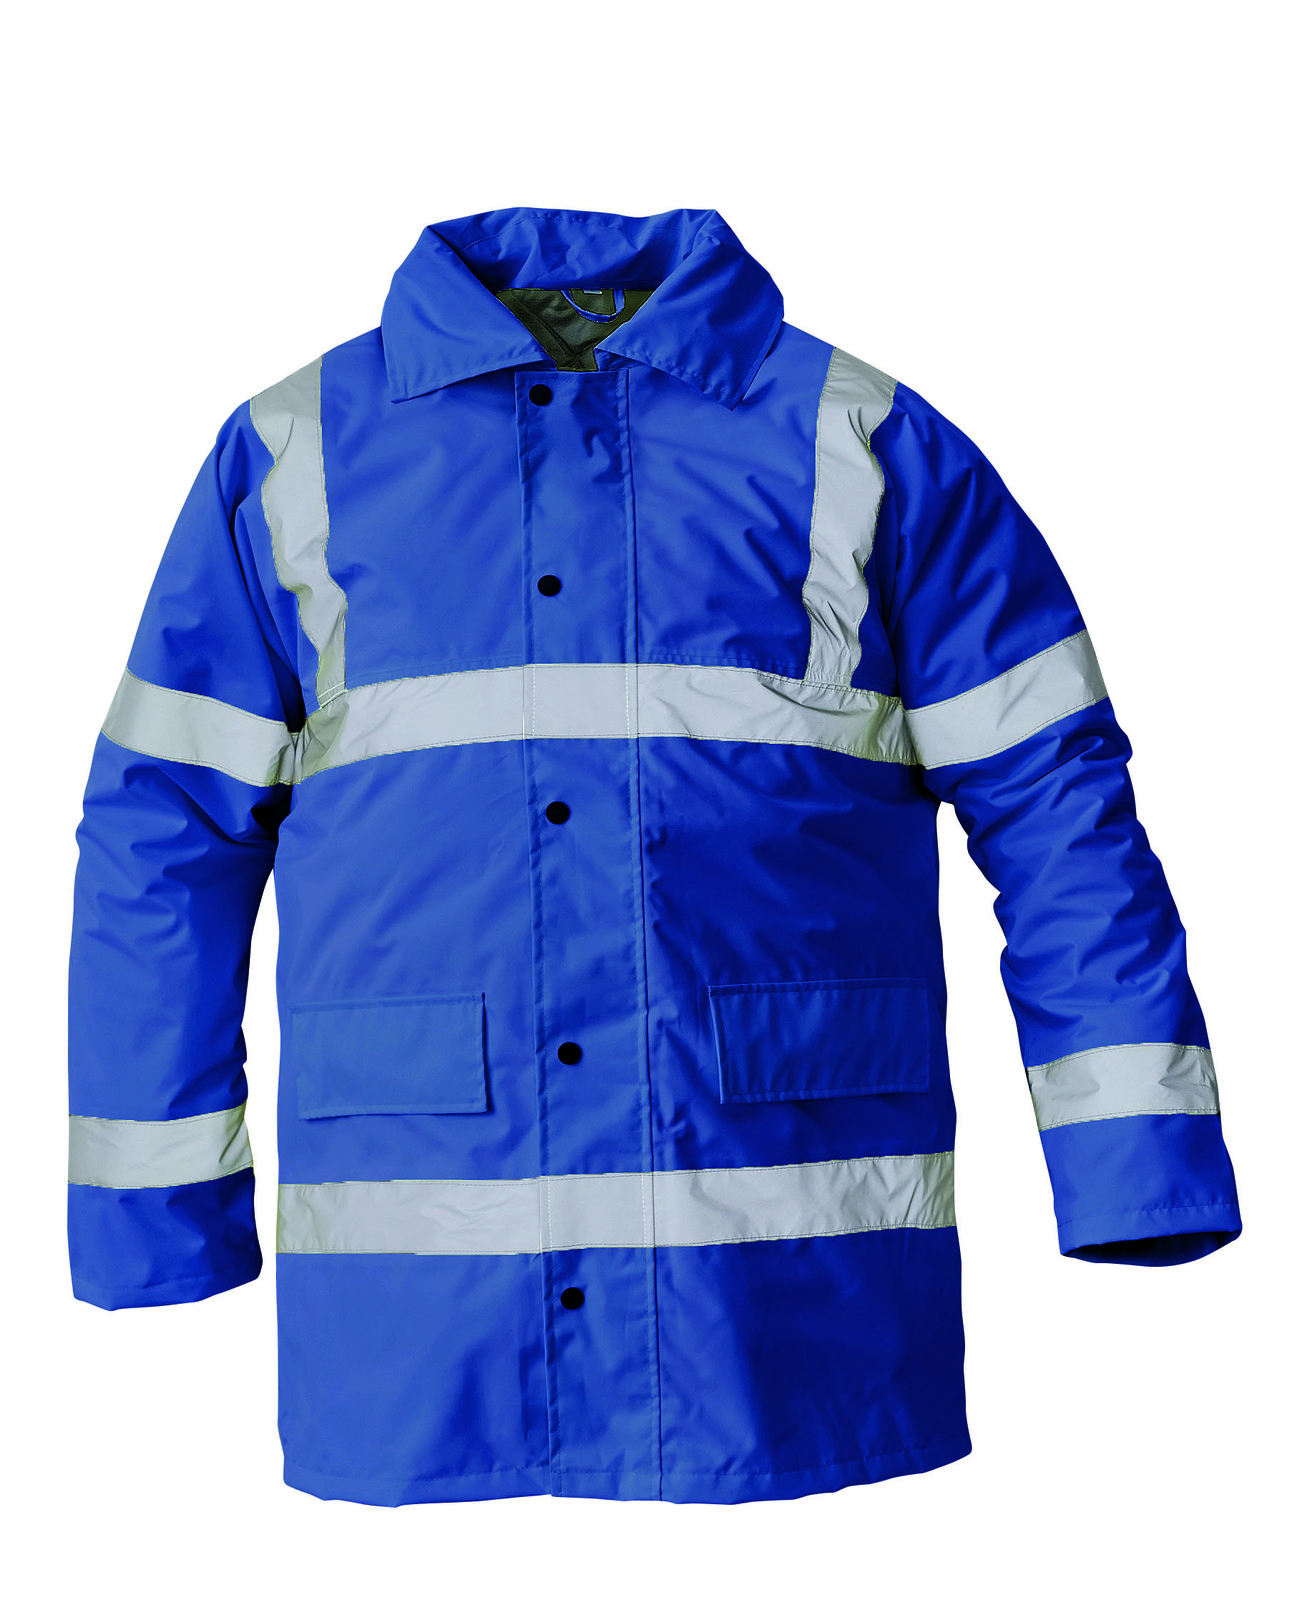 Ľahká zateplená reflexná bunda Sefton - veľkosť: XL, farba: royal blue